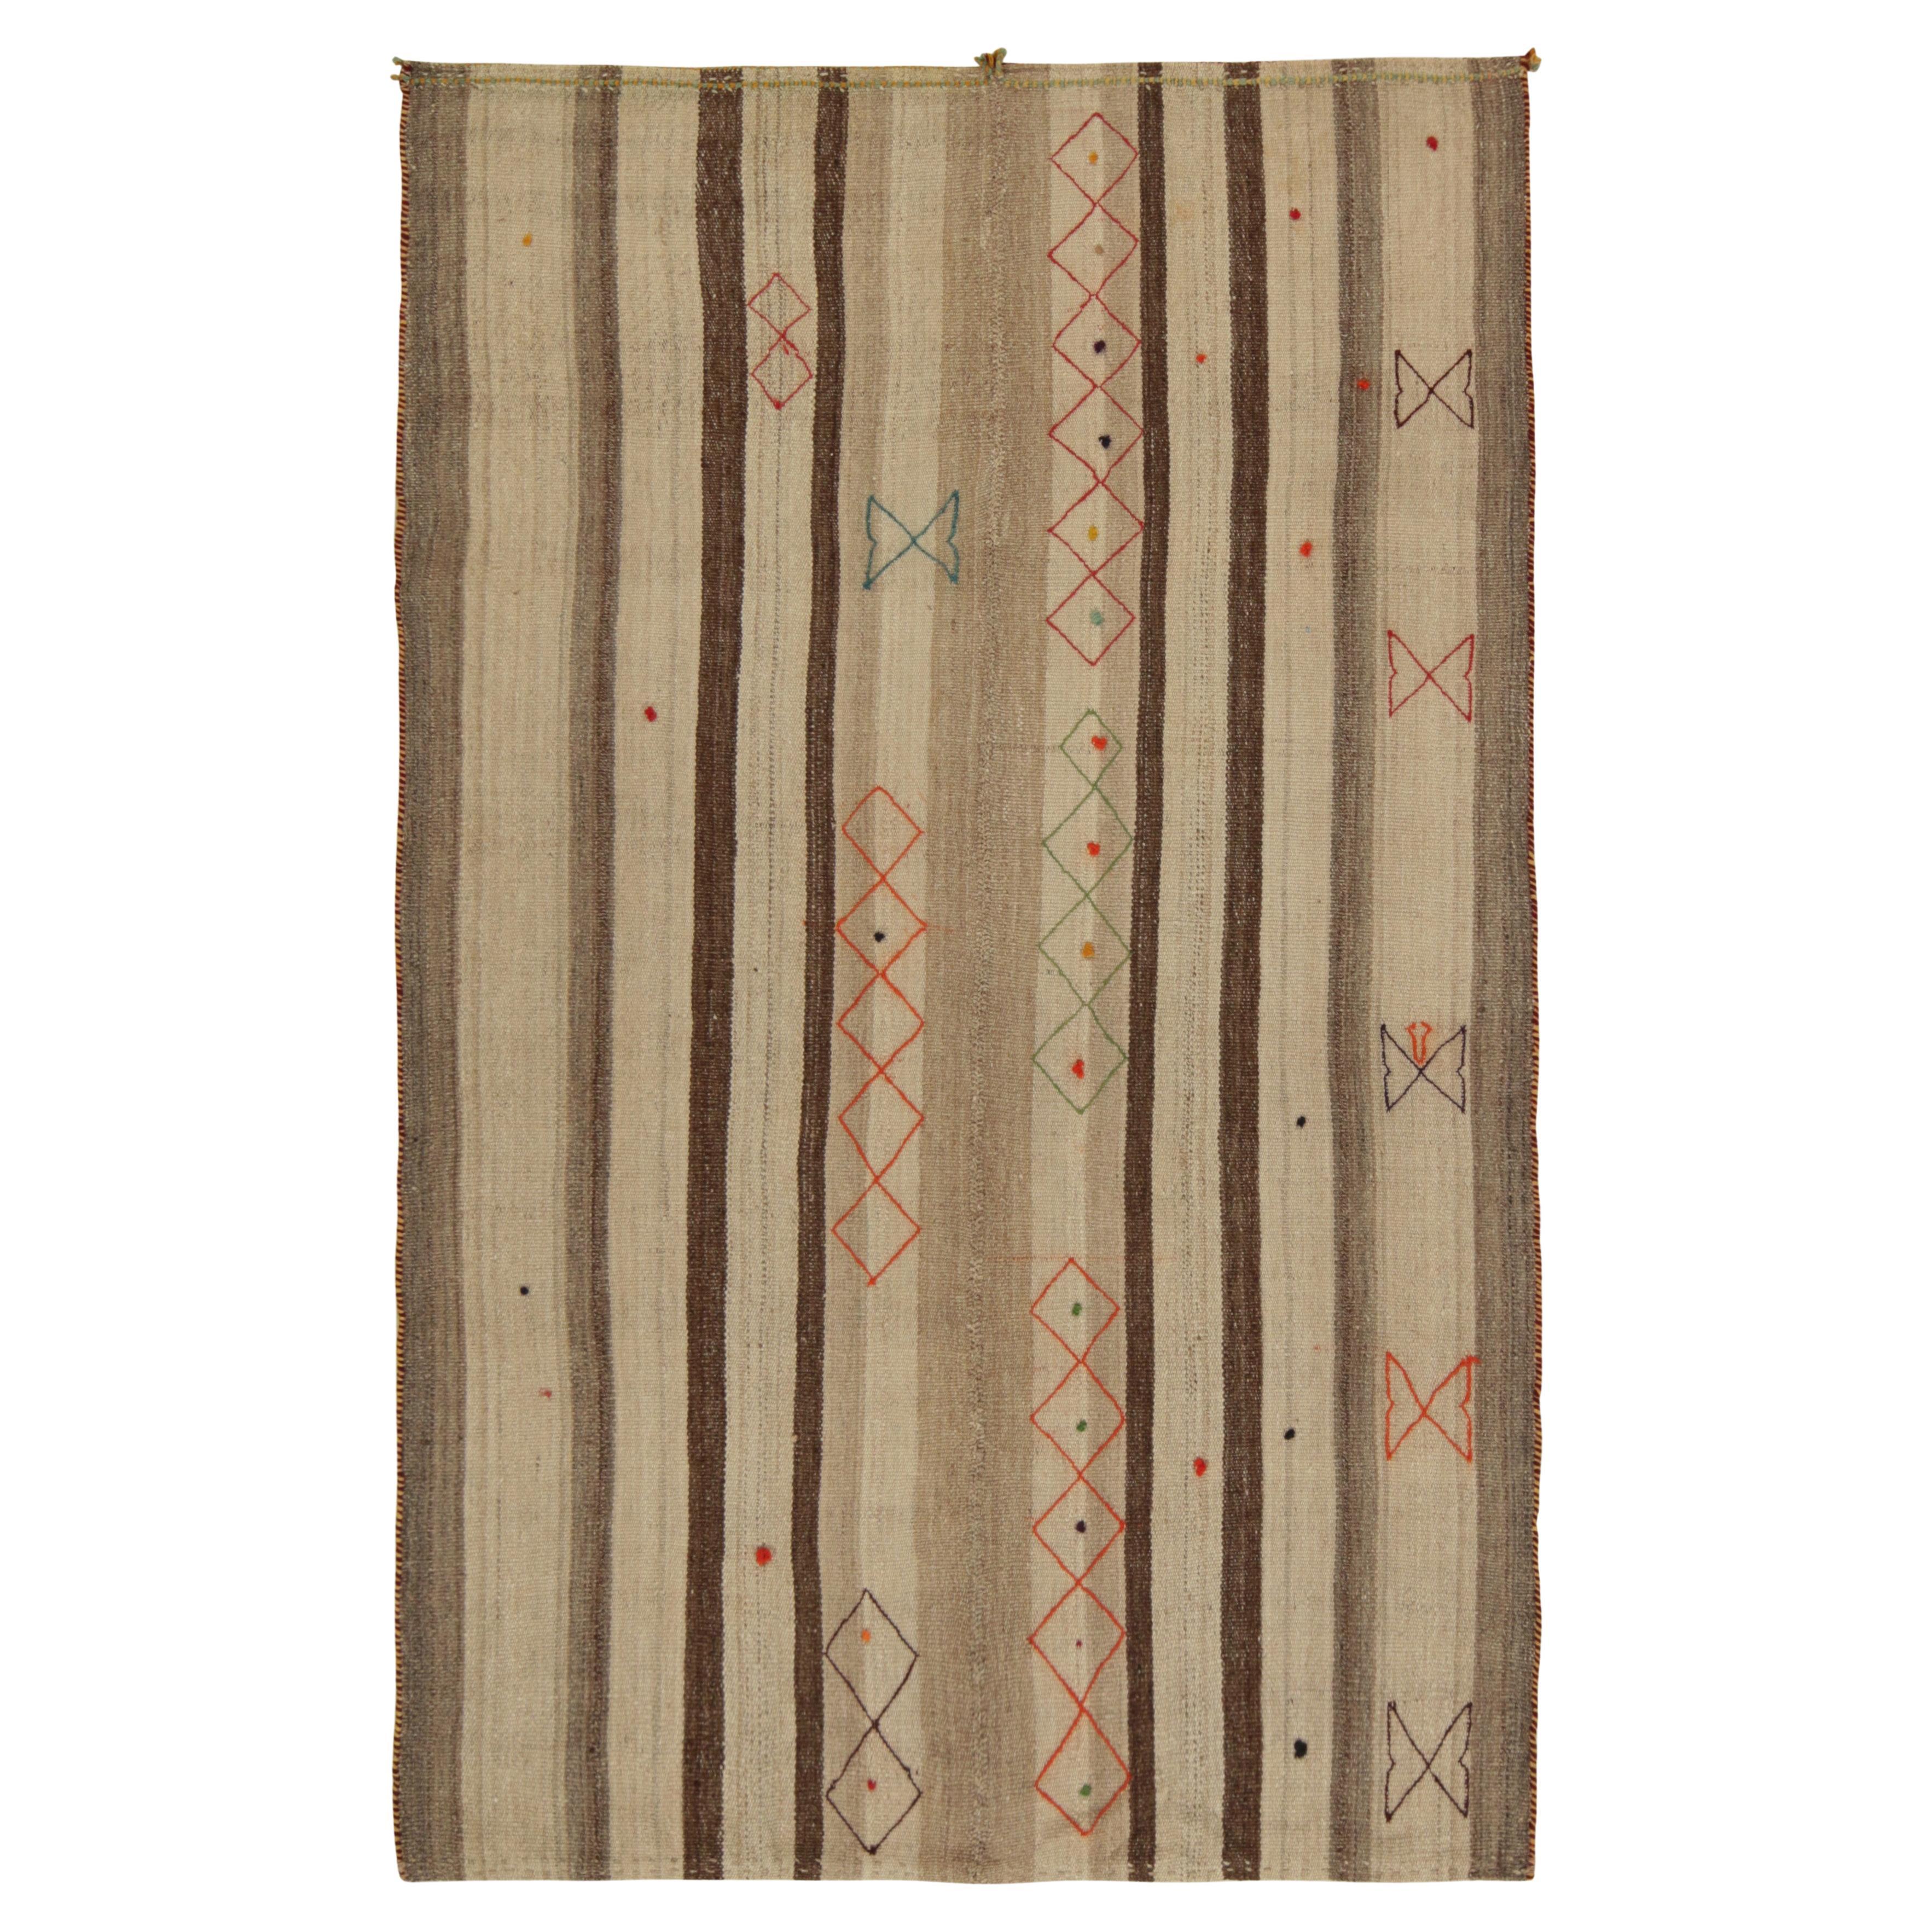 Vintage Persian Kilim Rug in Beige-Brown Stripes and Motifs by Rug & Kilim